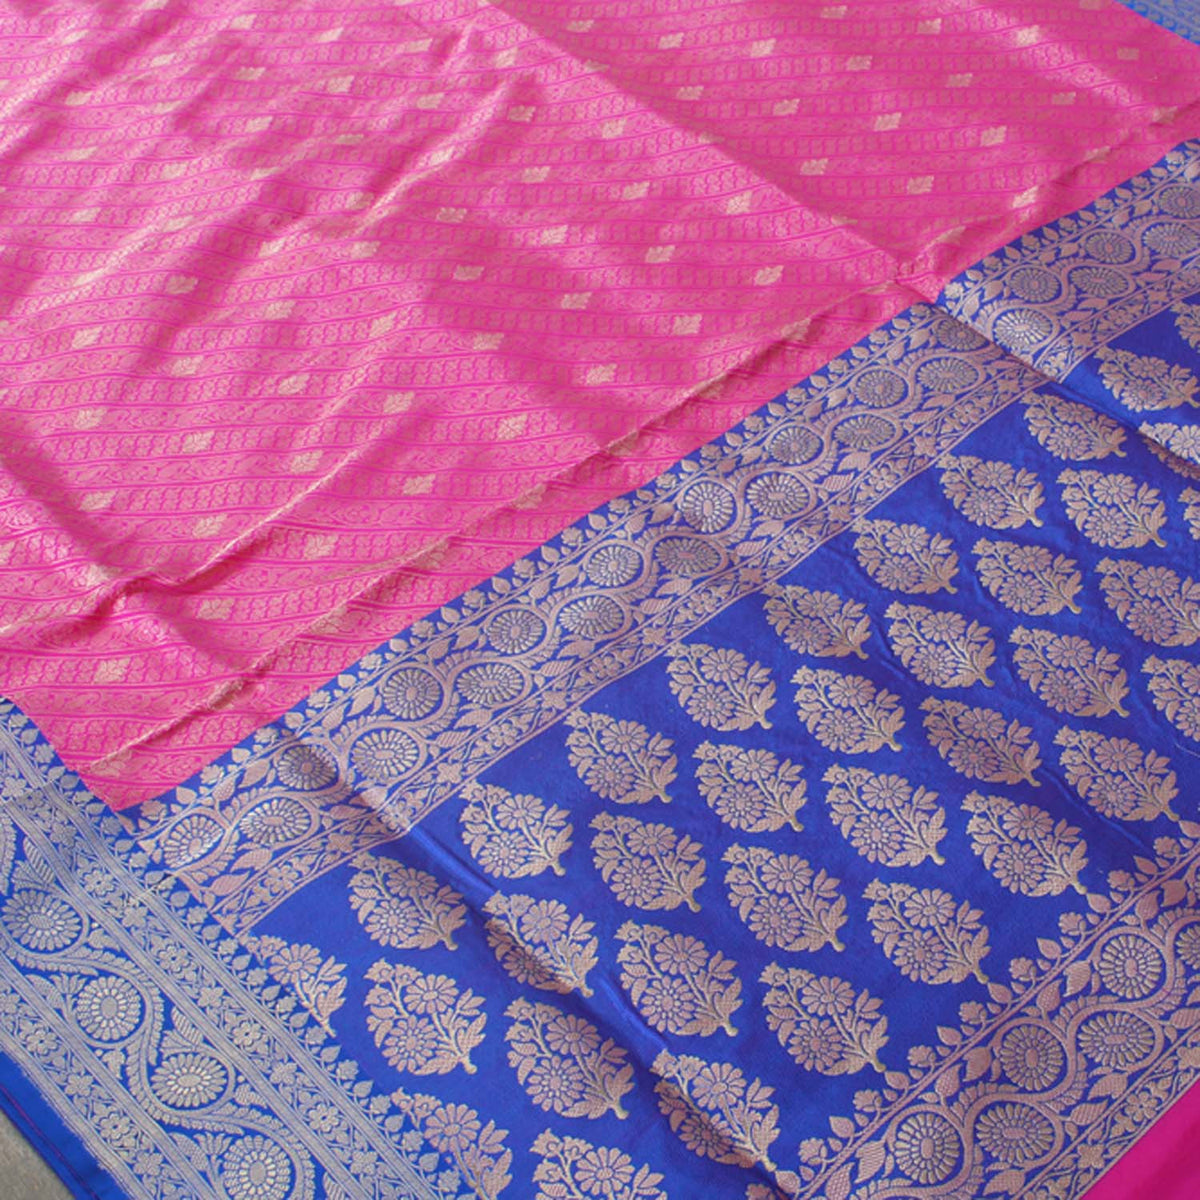 Rose Pink Pure Katan Silk Banarasi Handloom Saree - Tilfi - 3